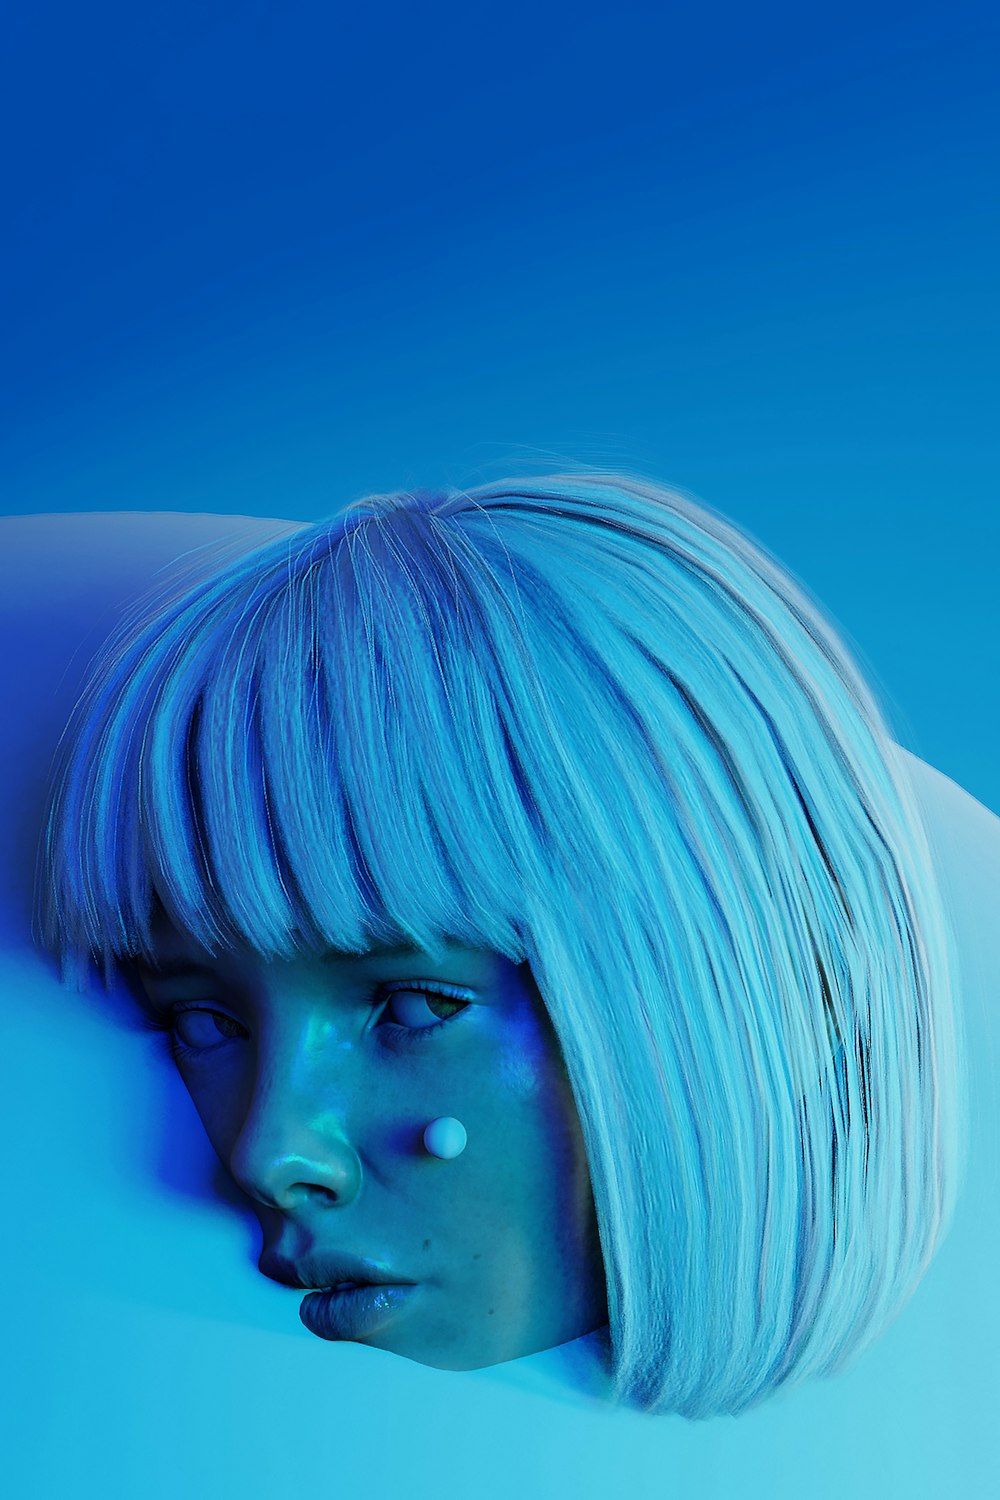 femme aux cheveux bleus regardant son côté gauche